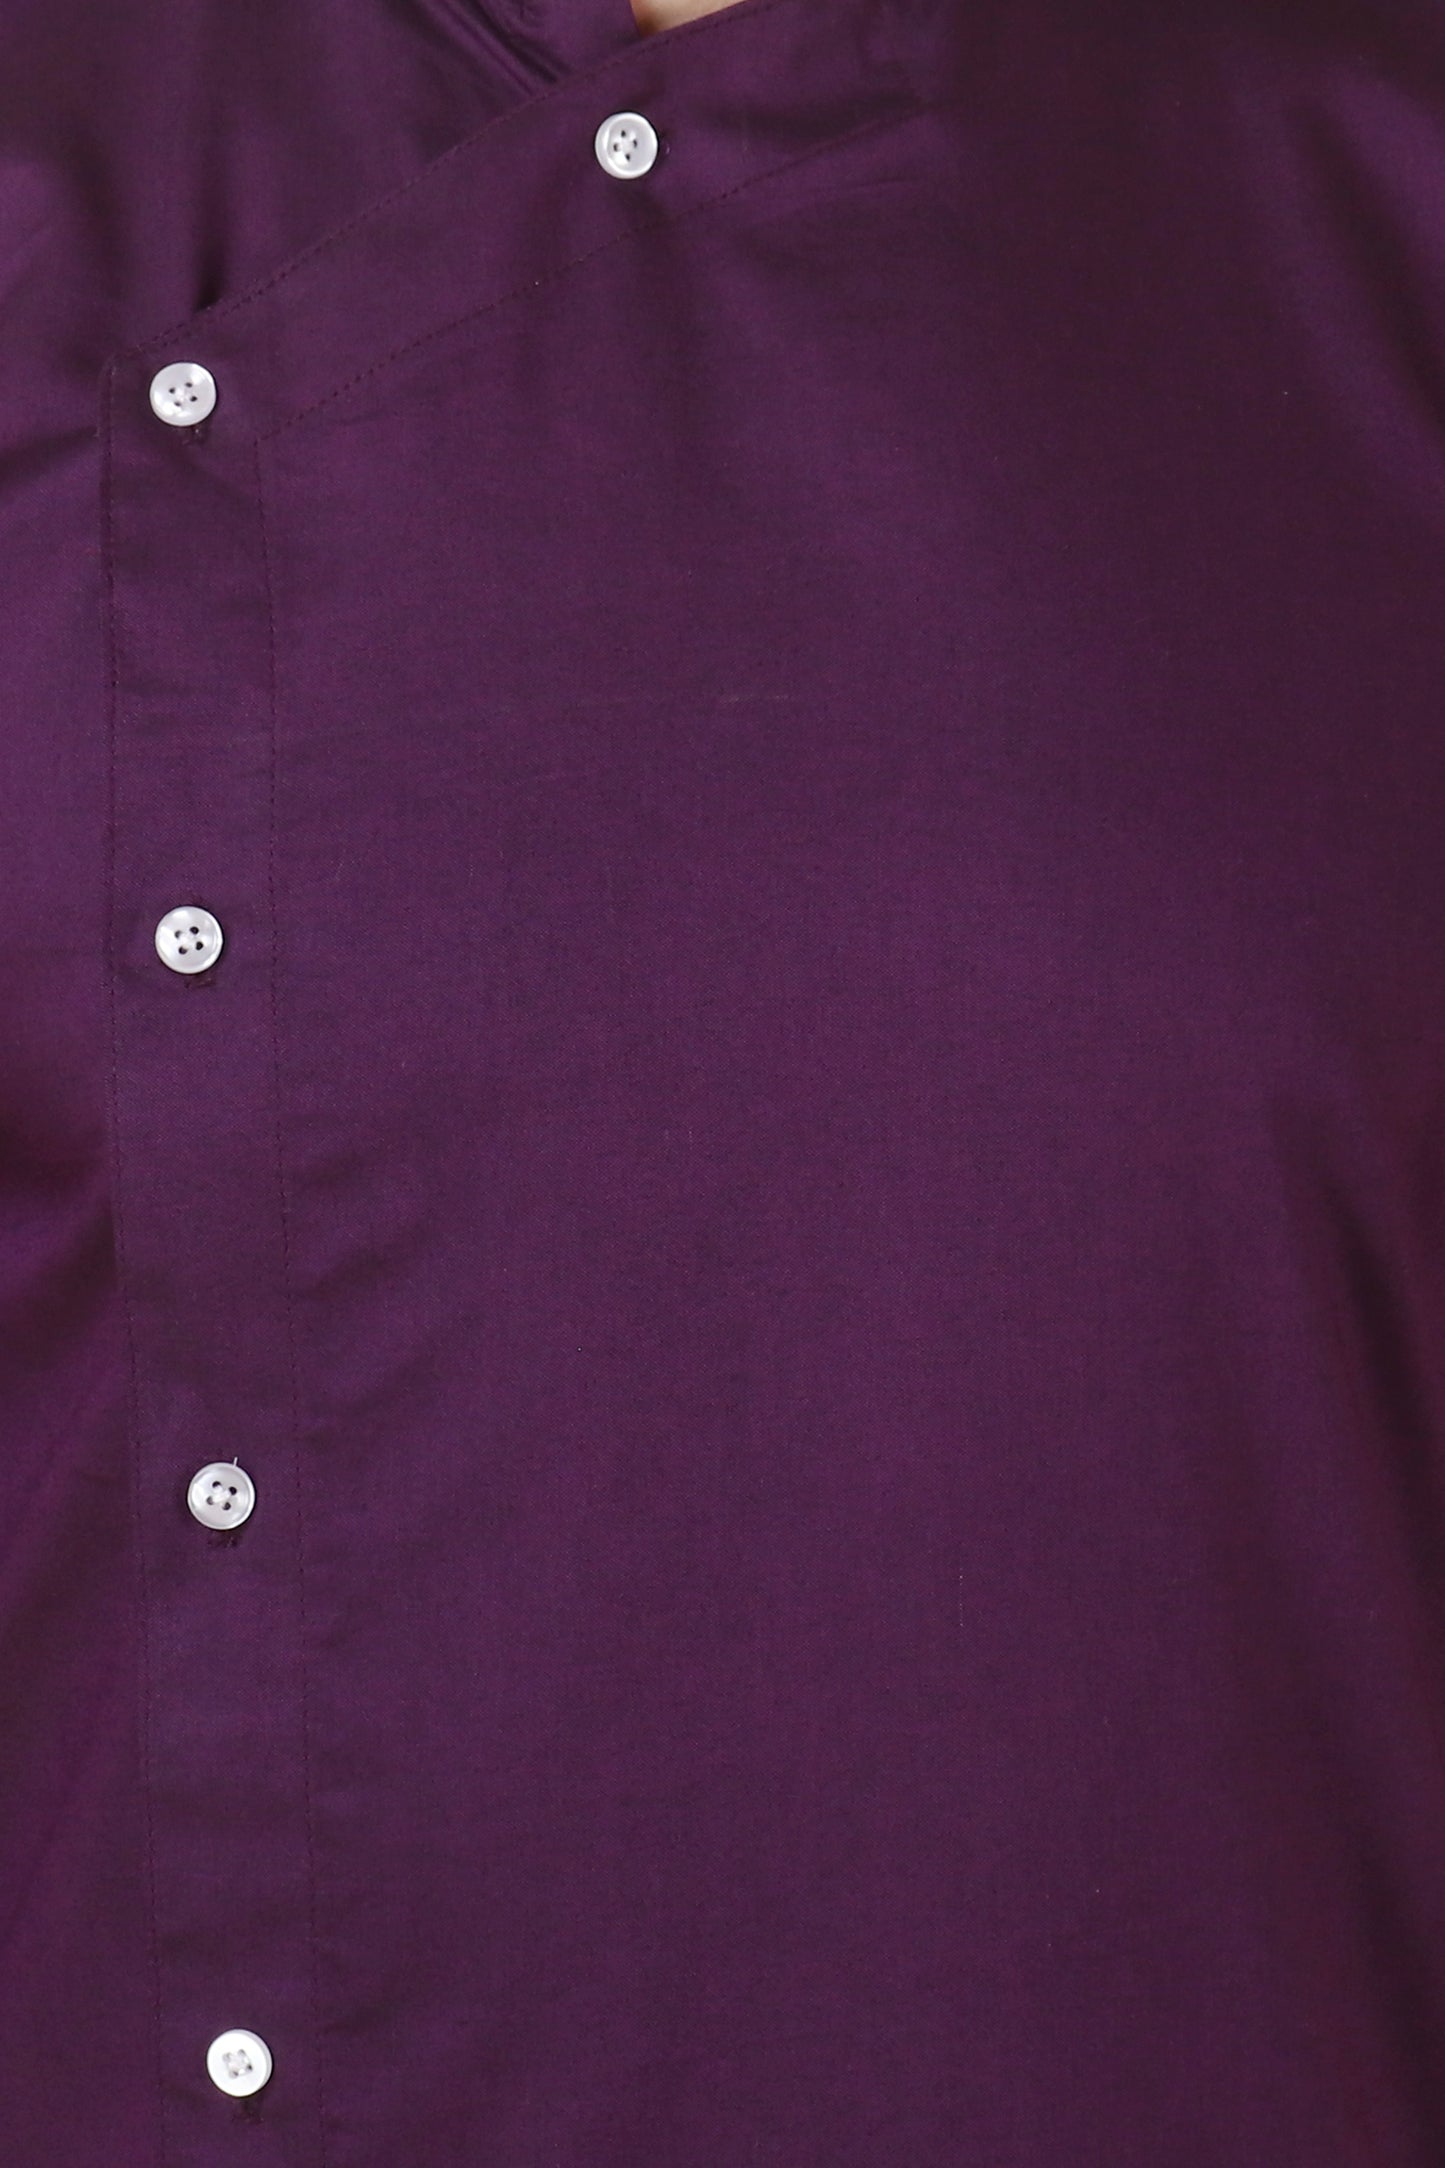 Purple Plus Size Kurta Pajama